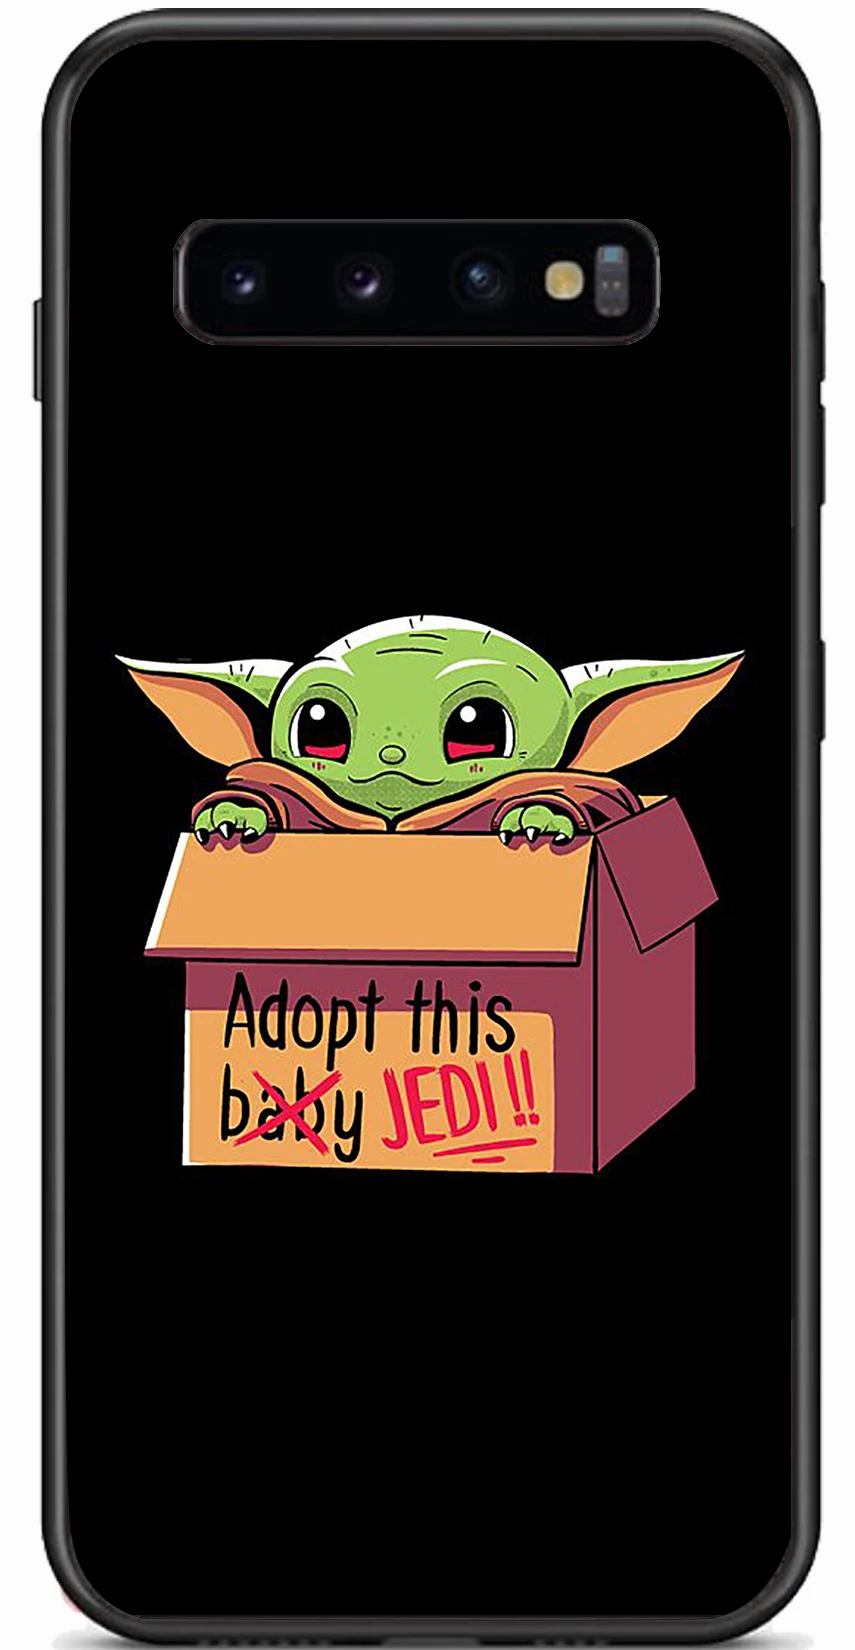 

Baby Yoda Cartoon Case for Samsung Galaxy A50 S10+ S9+ Note10 A80 M30S A70 A50S S10e Black Case Flexible Tpu Soft Cover